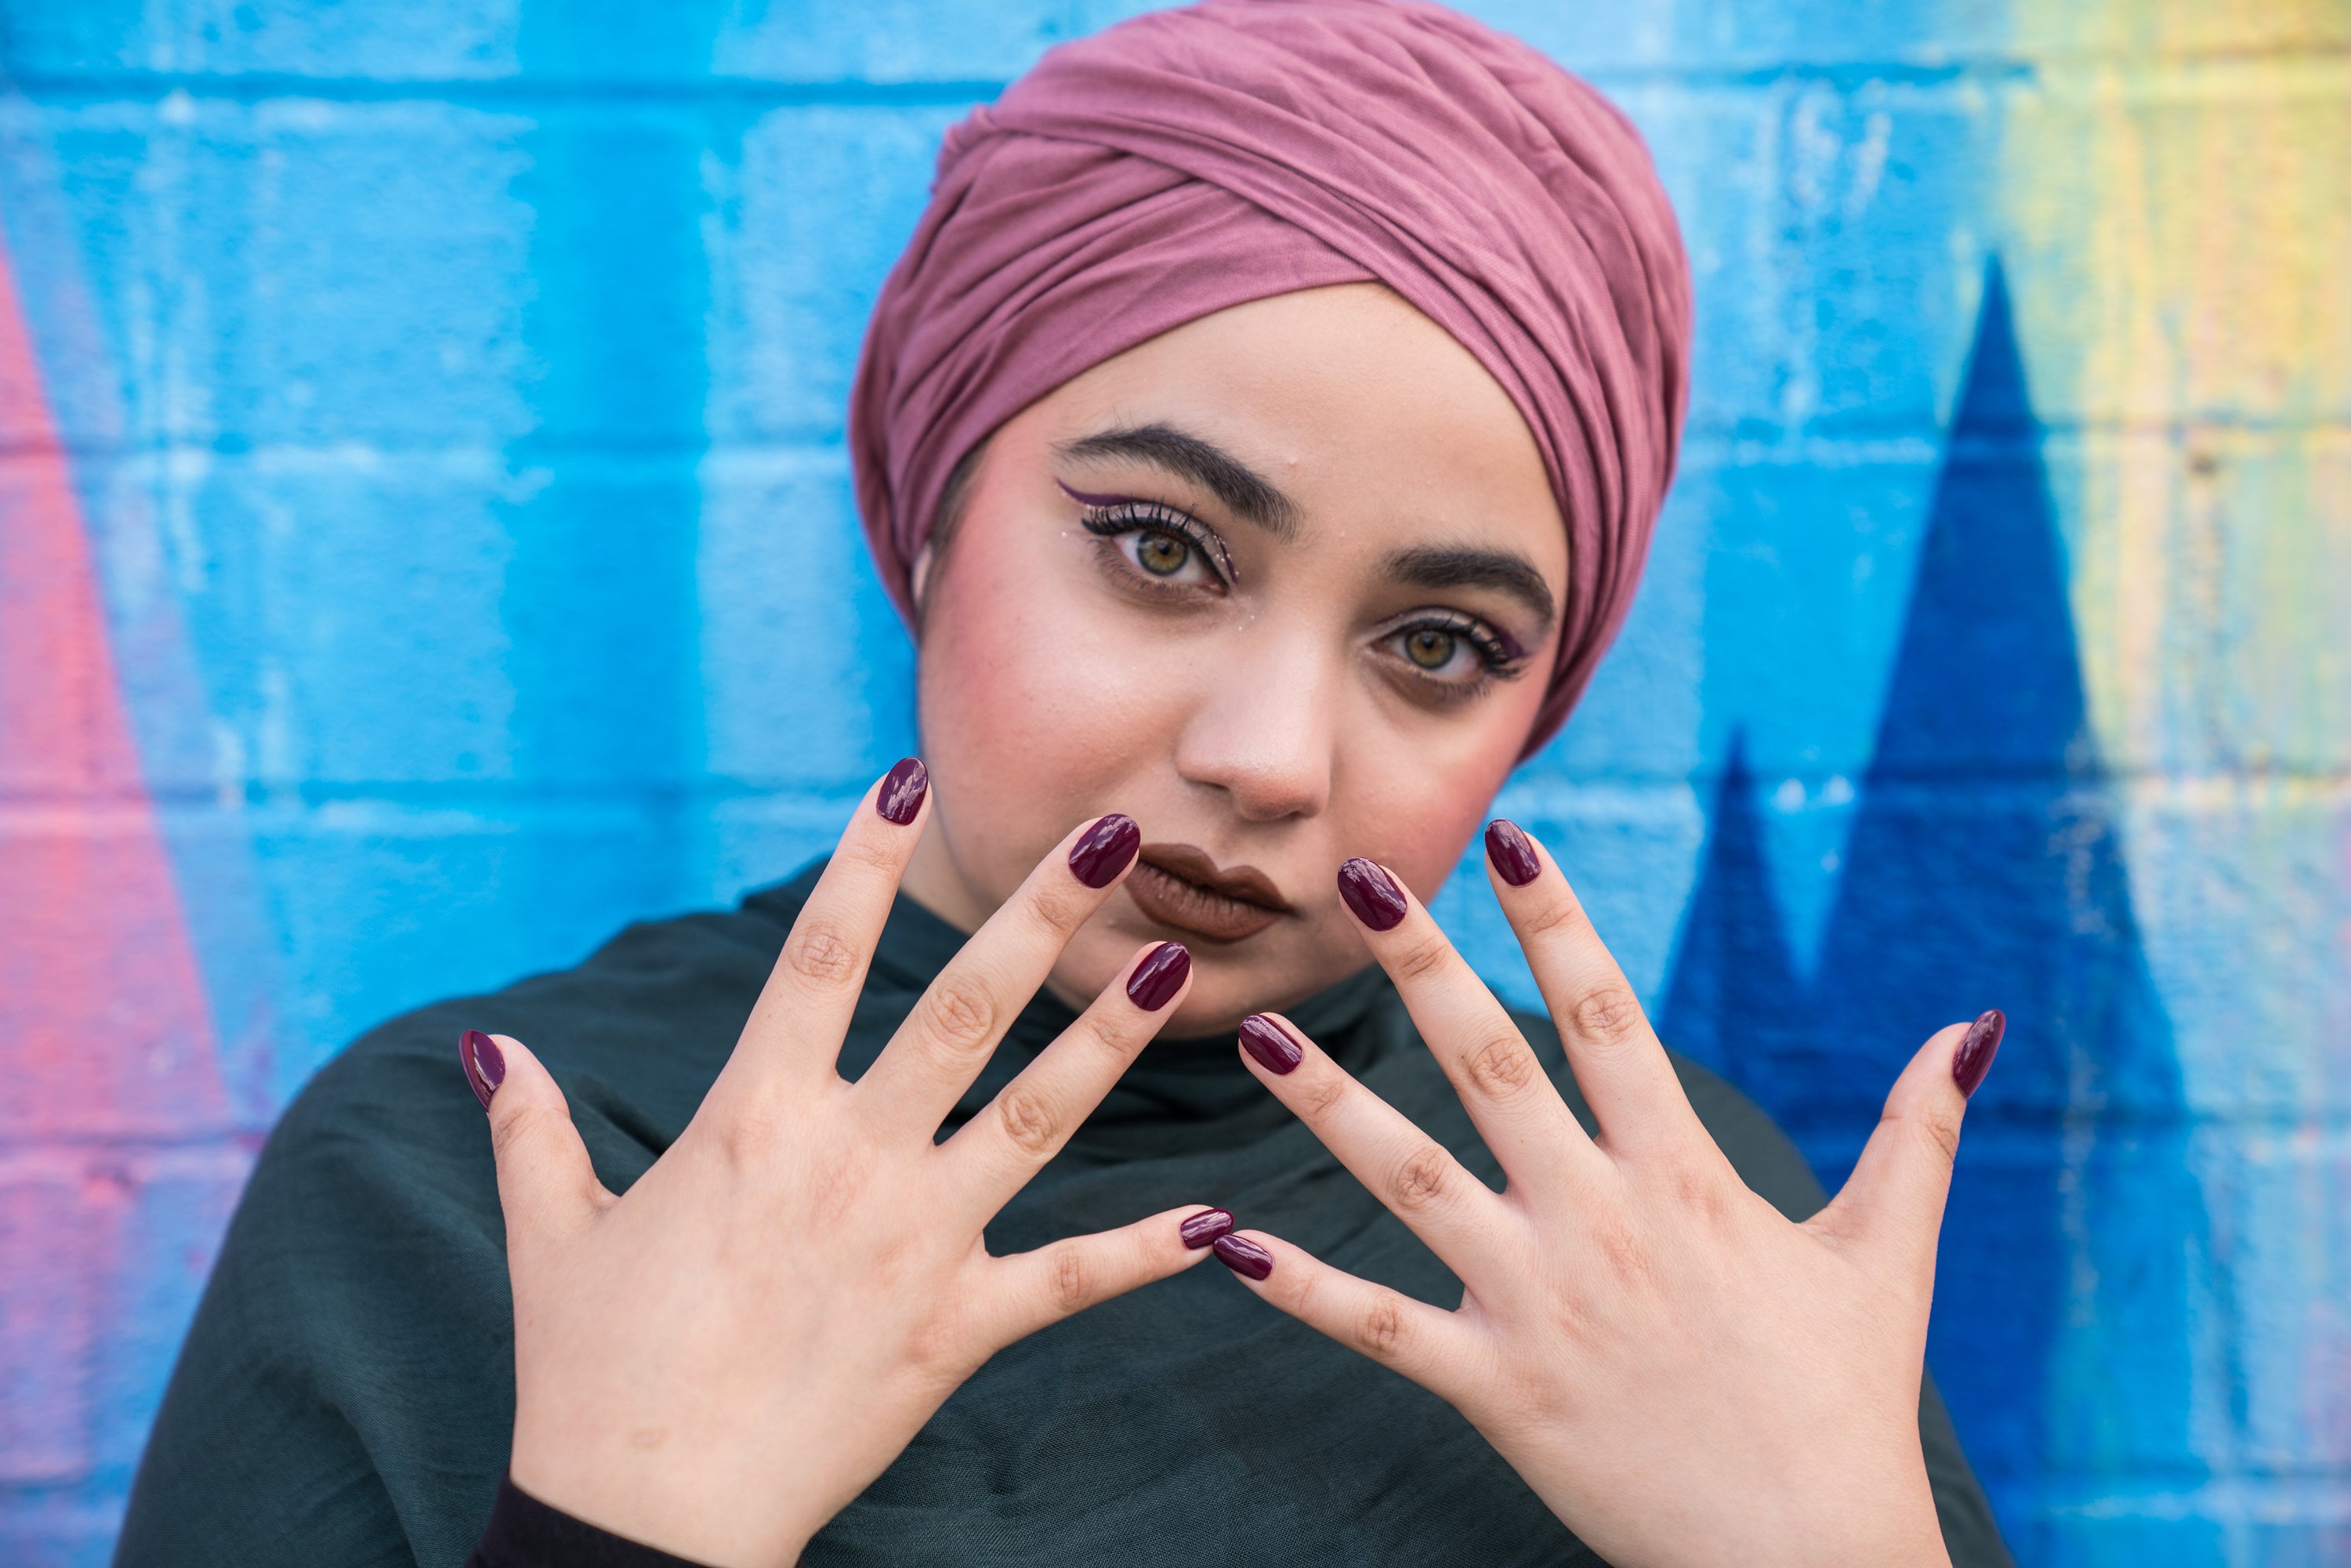 Nail tech makes nail rings so Muslim women can enjoy false nails